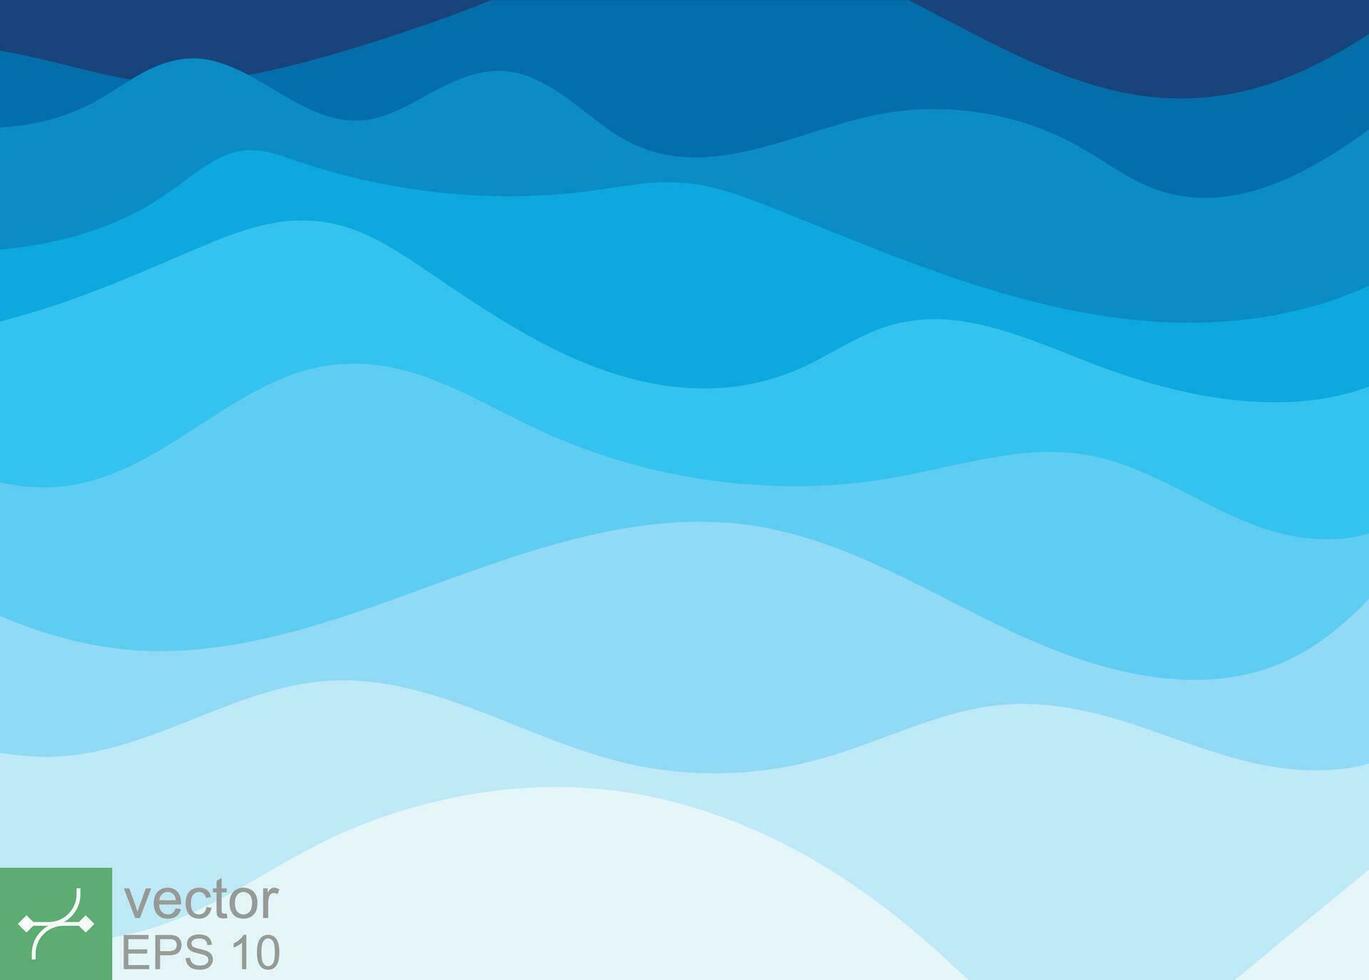 Wasser Welle Hintergrund Vektor Muster. abstrakt Blau Ozean, Meer, Schicht gestalten Zickzack- Muster im eben Design Stil Illustration. eps 10.